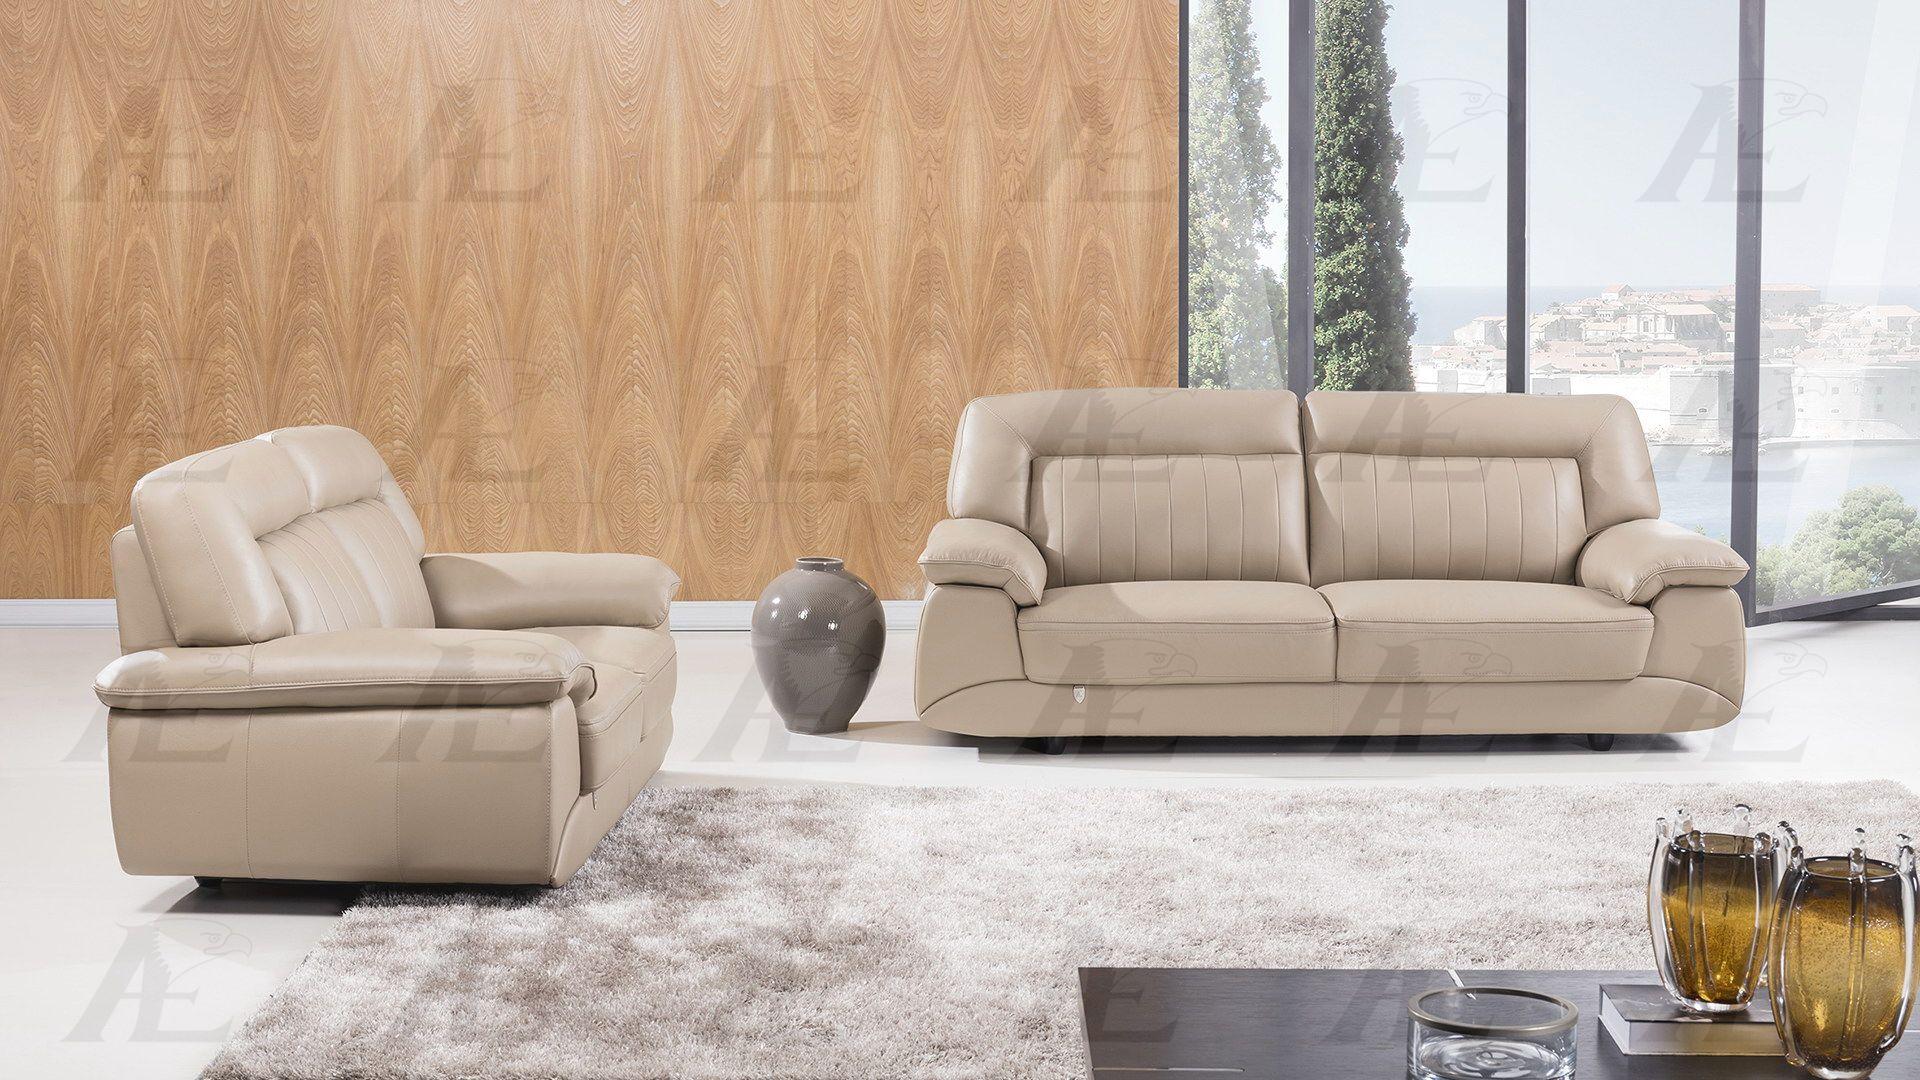 Modern Sofa and Loveseat Set EK072-TAN EK072-TAN Set-2 in Tan Italian Leather